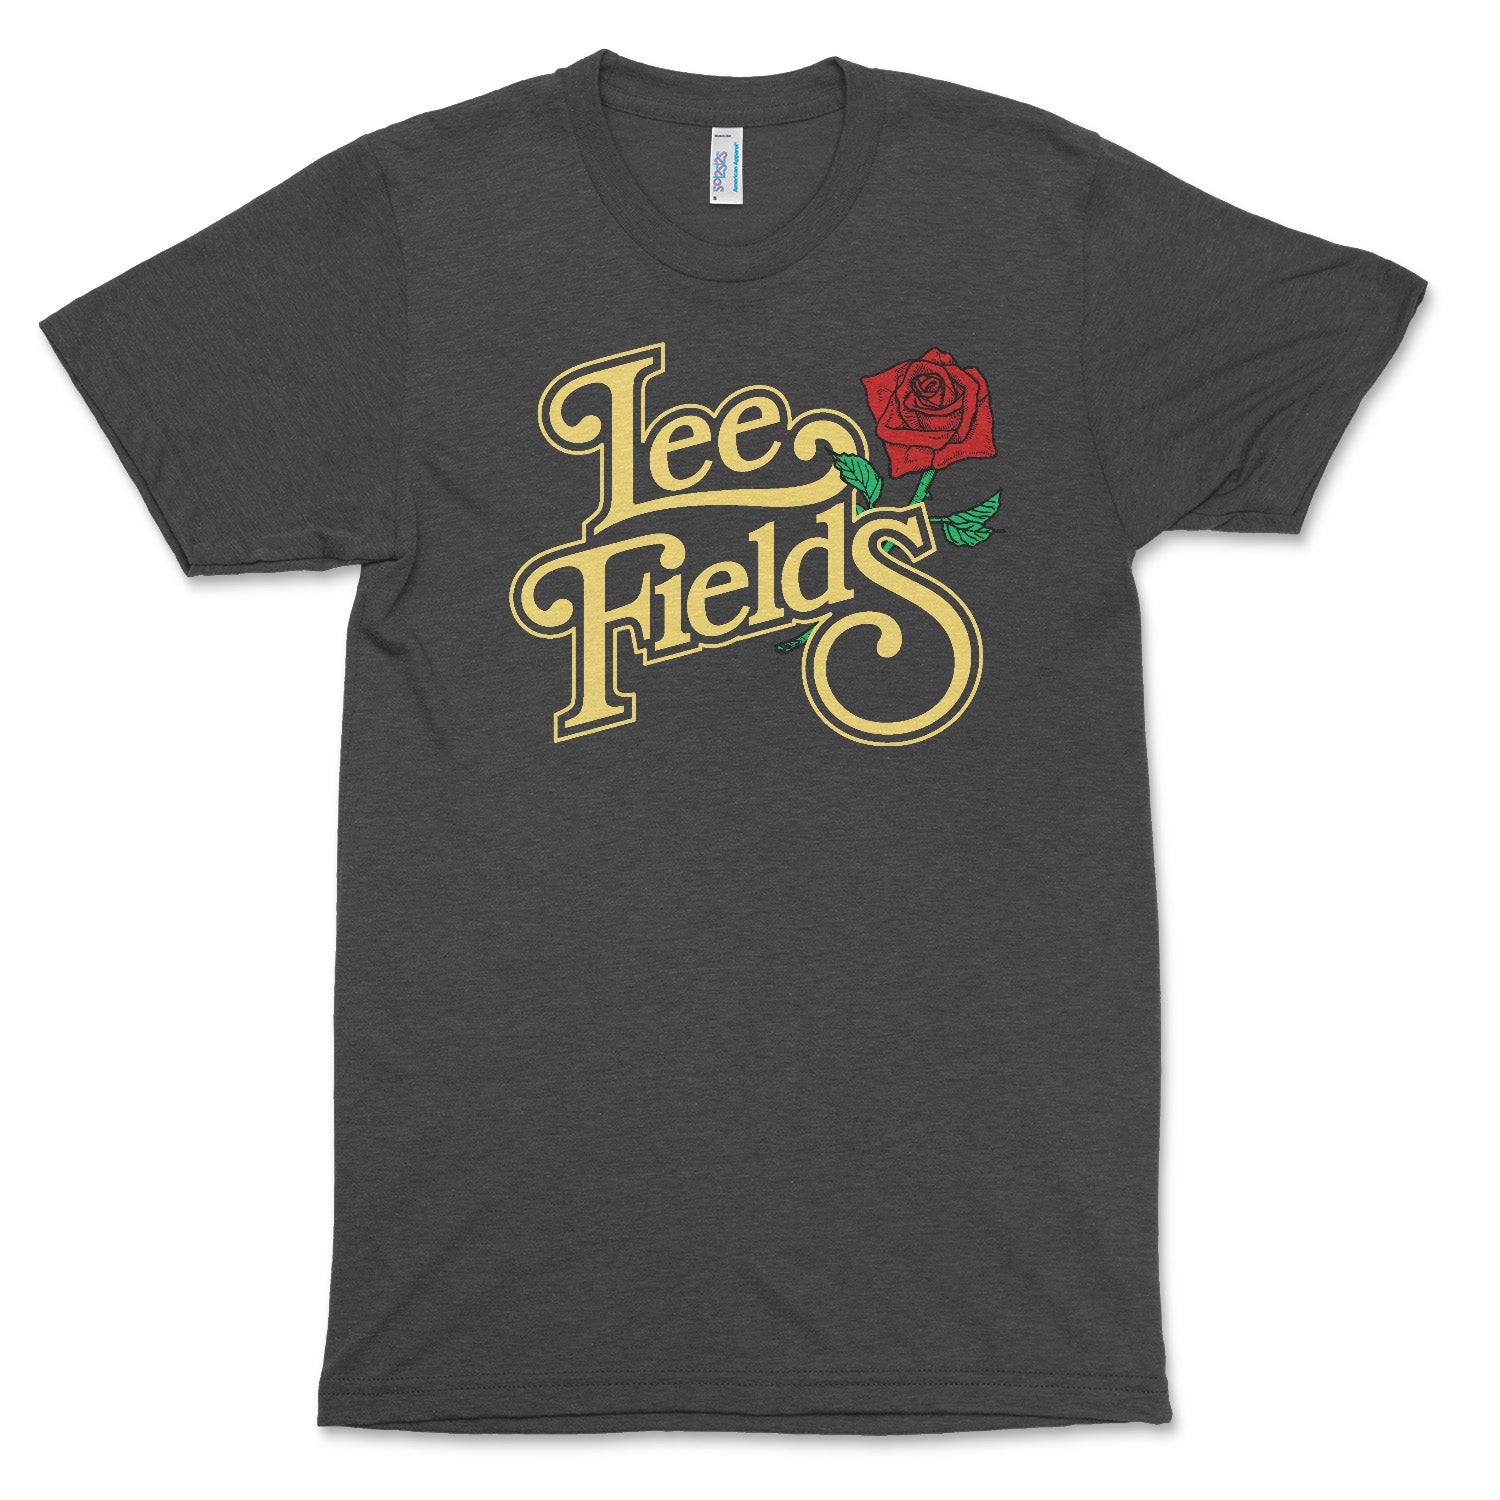 Lee Fields Rose T-shirt (Dark Grey)